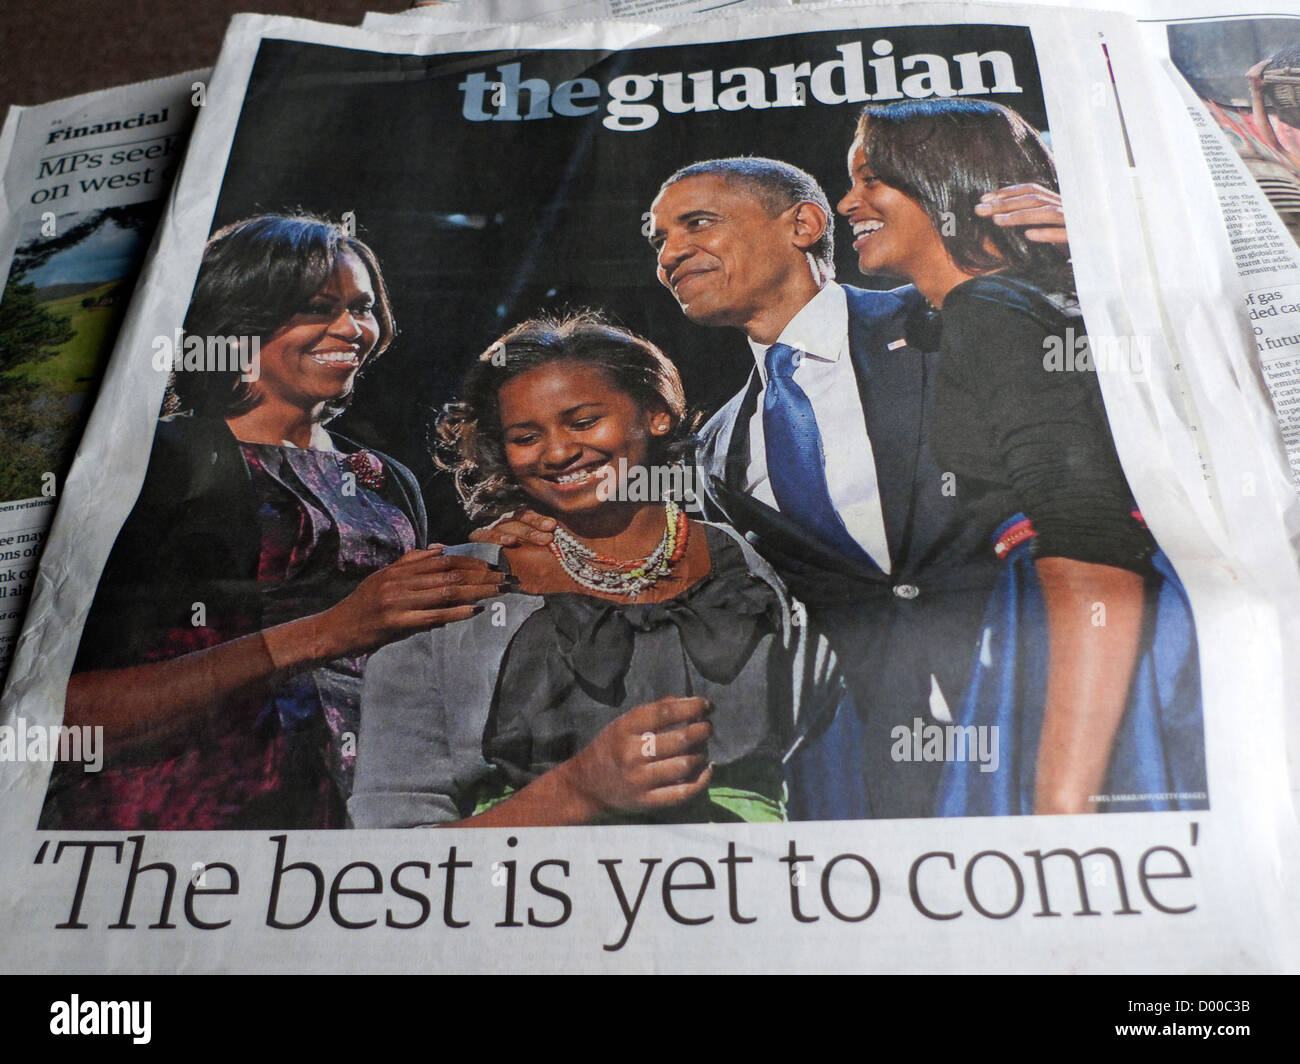 El presidente Barack Obama y su familia usa la noche de las elecciones de 2012 festejar la victoria en los postes en la primera página del periódico The Guardian UK Foto de stock